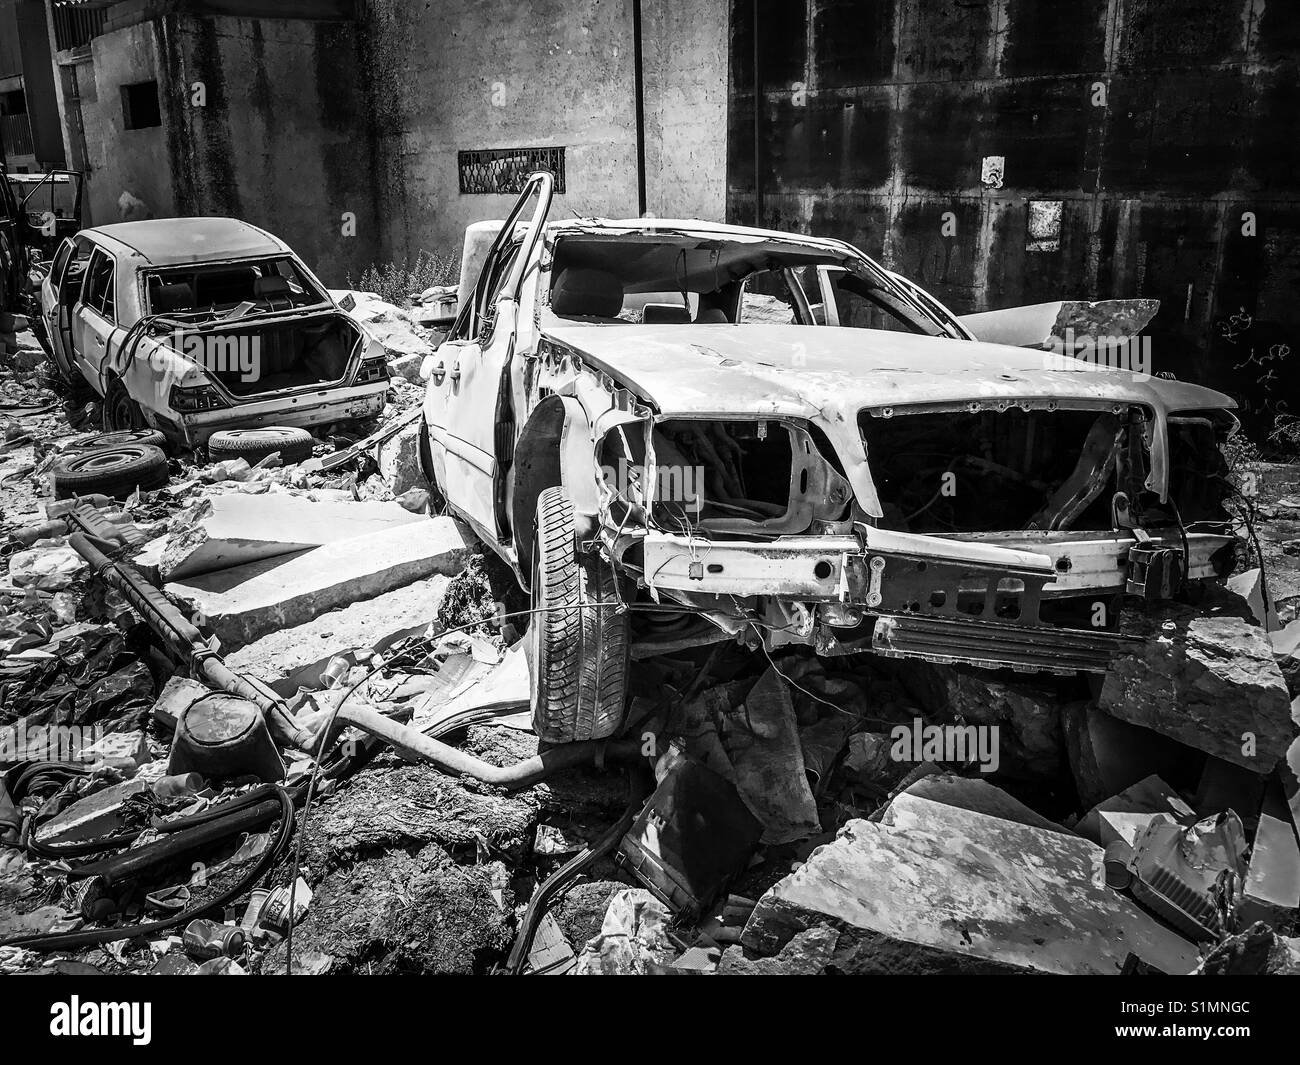 Fahrzeuge beschädigt in Aida Camp in Bethlehem, Palästina, durch israelische Artillerie Feuer während der zweiten Intifada von 2002. Stockfoto